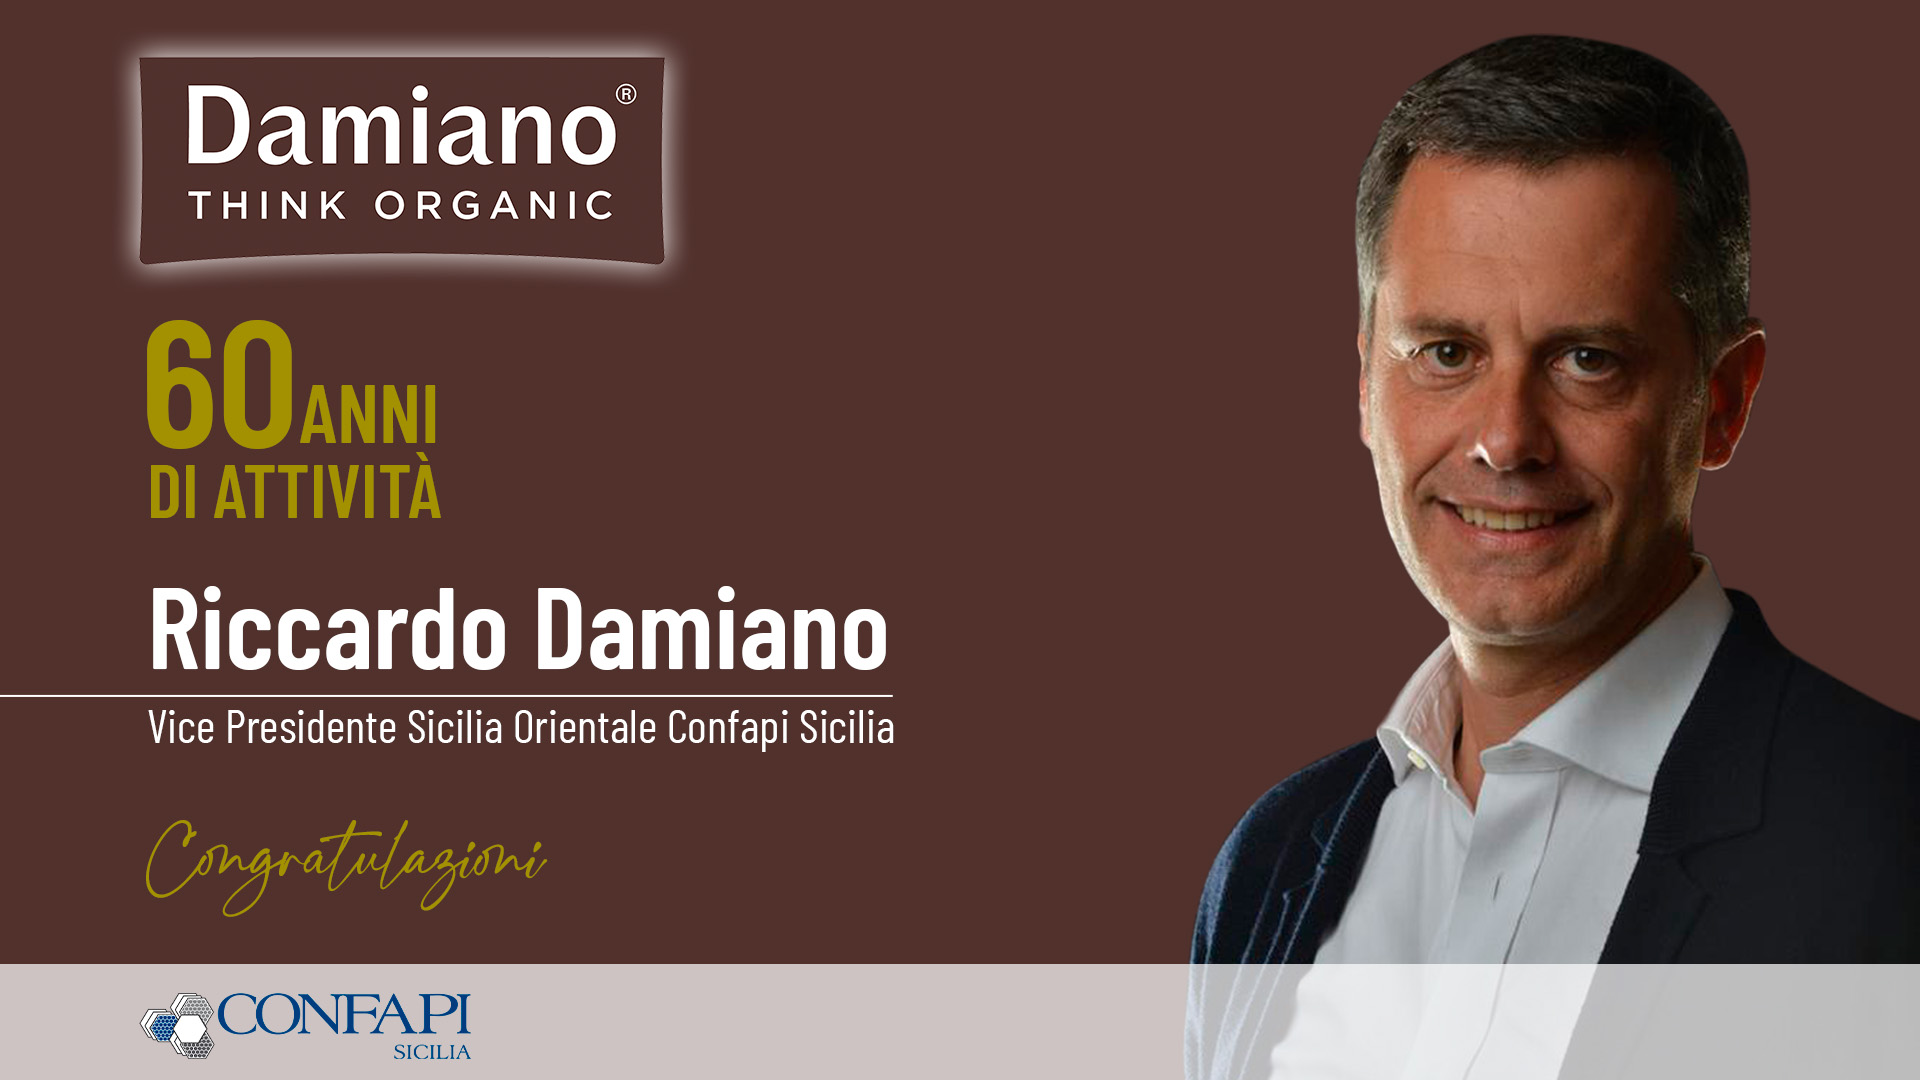 Al momento stai visualizzando Damiano60, sessant’anni di attività nel settore alimentare